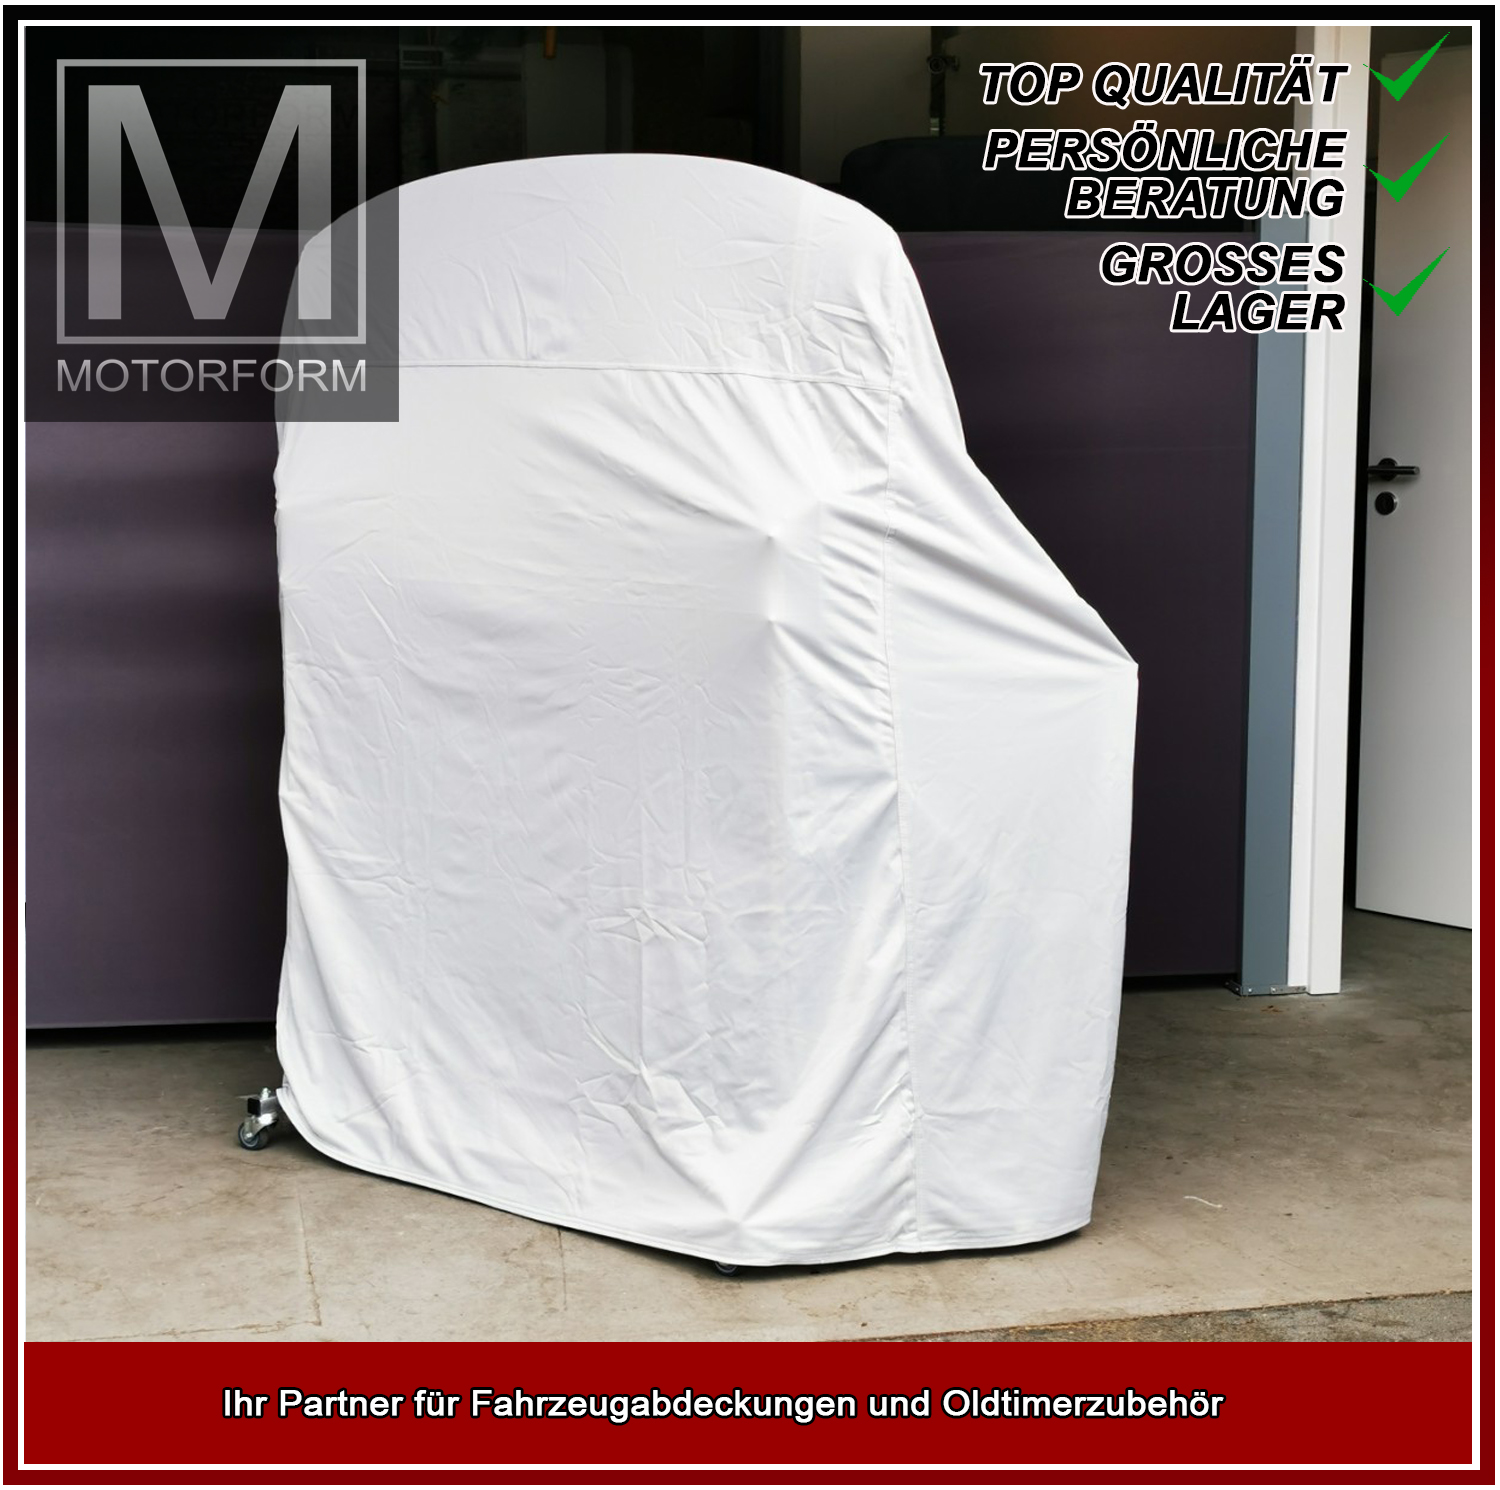 Silver Series Hardtop-Cover for Hardtop-Cover Porsche Boxster 98